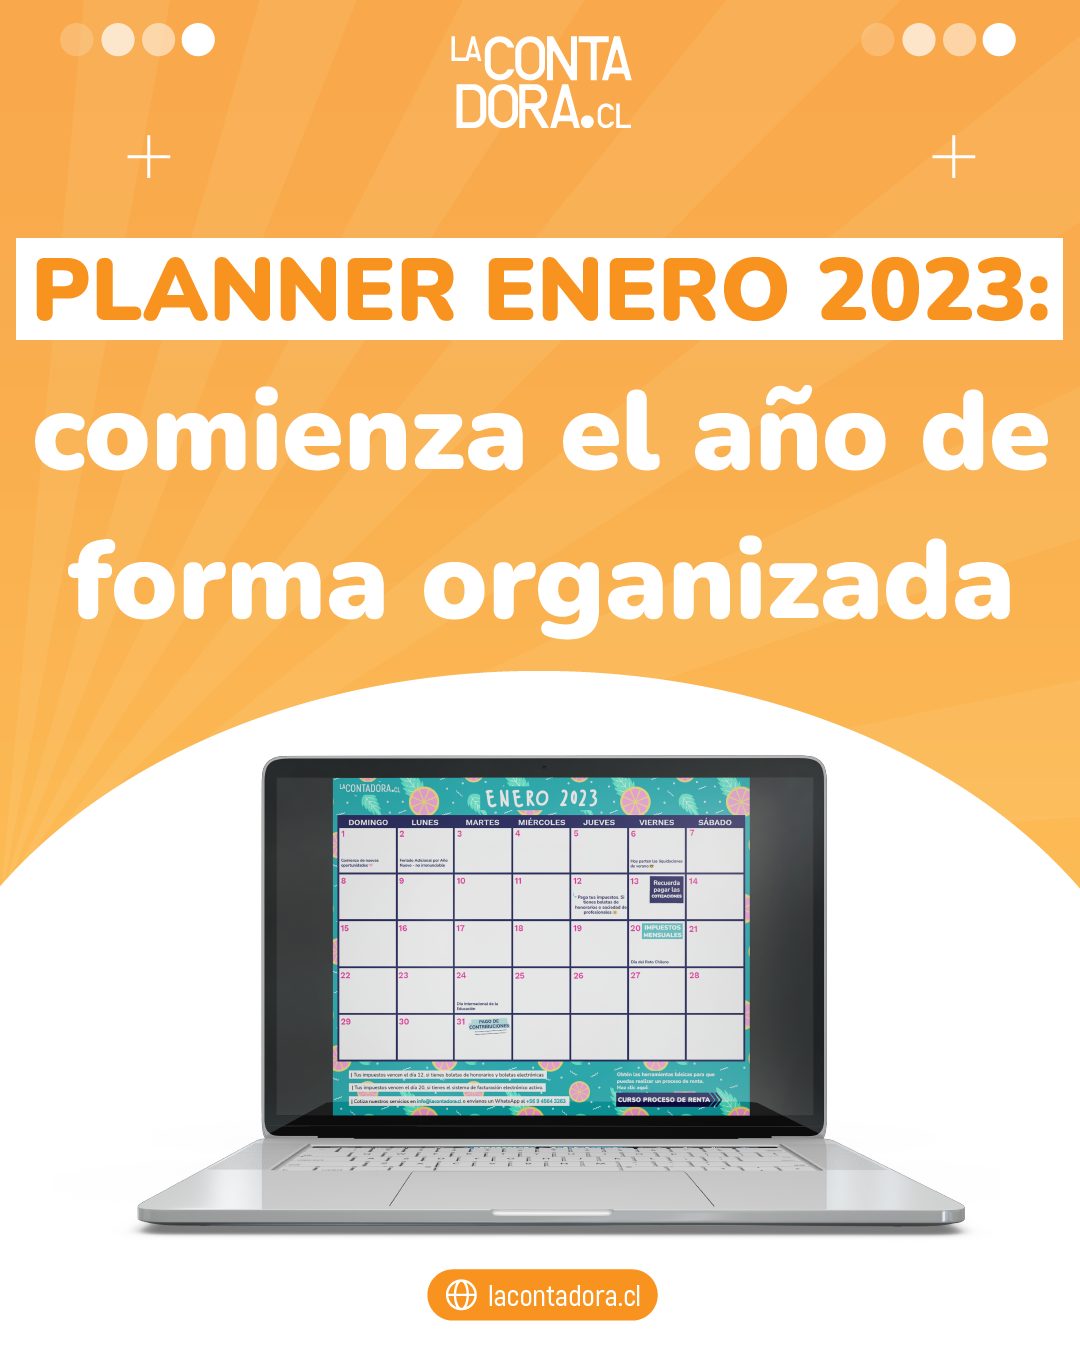 PLANNER ENERO 2023: COMIENZA EL AÑO DE FORMA ORGANIZADA